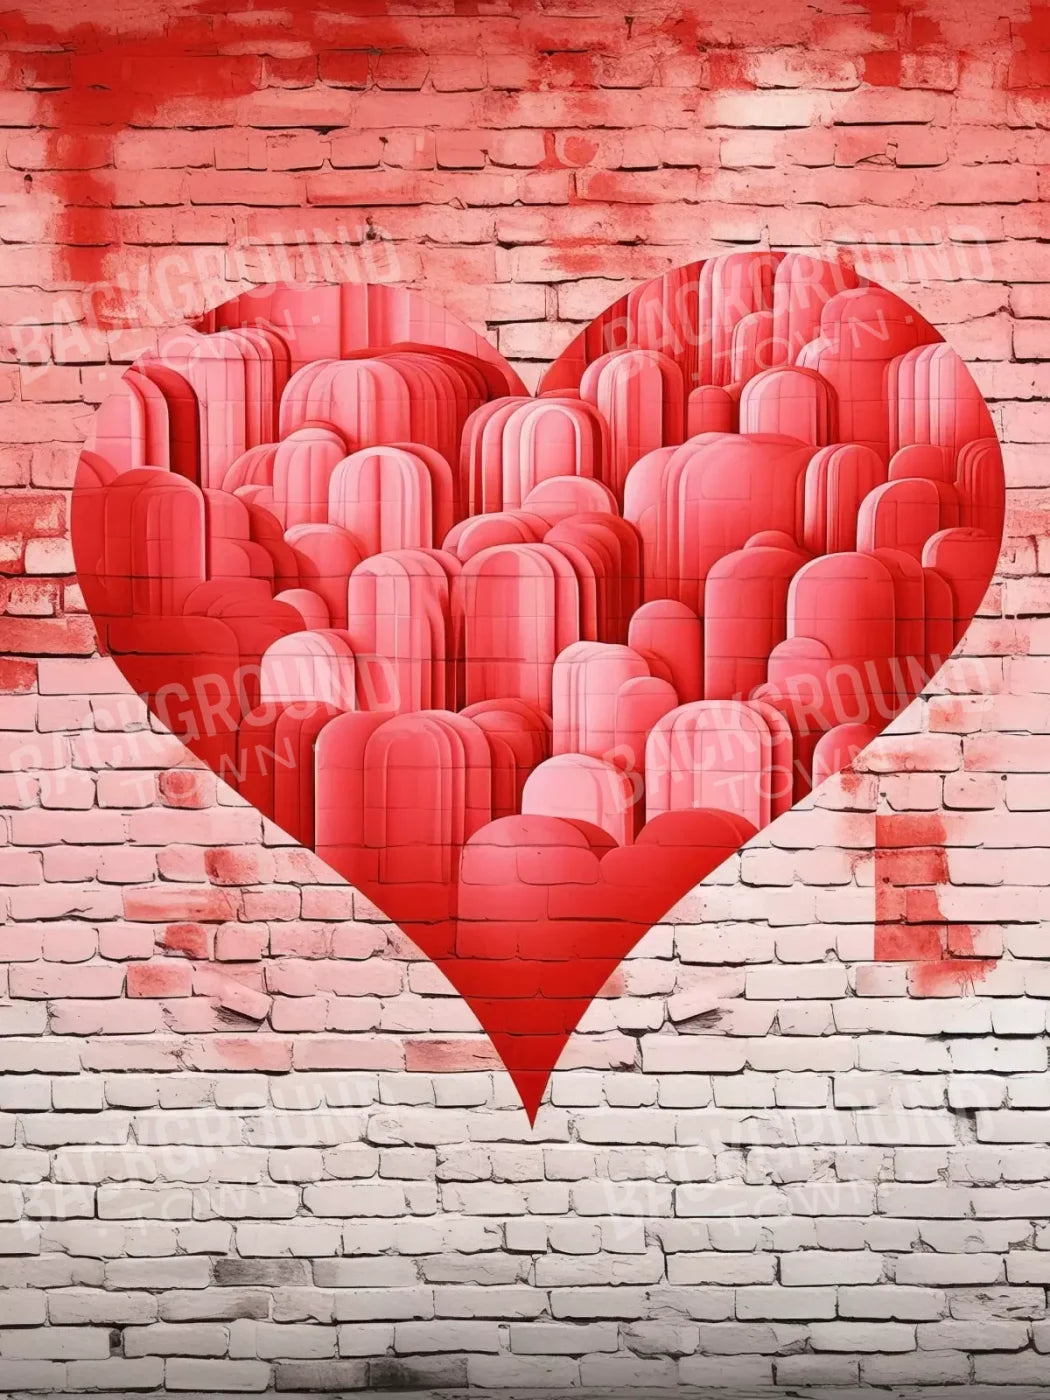 Graffitti Heart Iii 6’X8’ Fleece (72 X 96 Inch) Backdrop